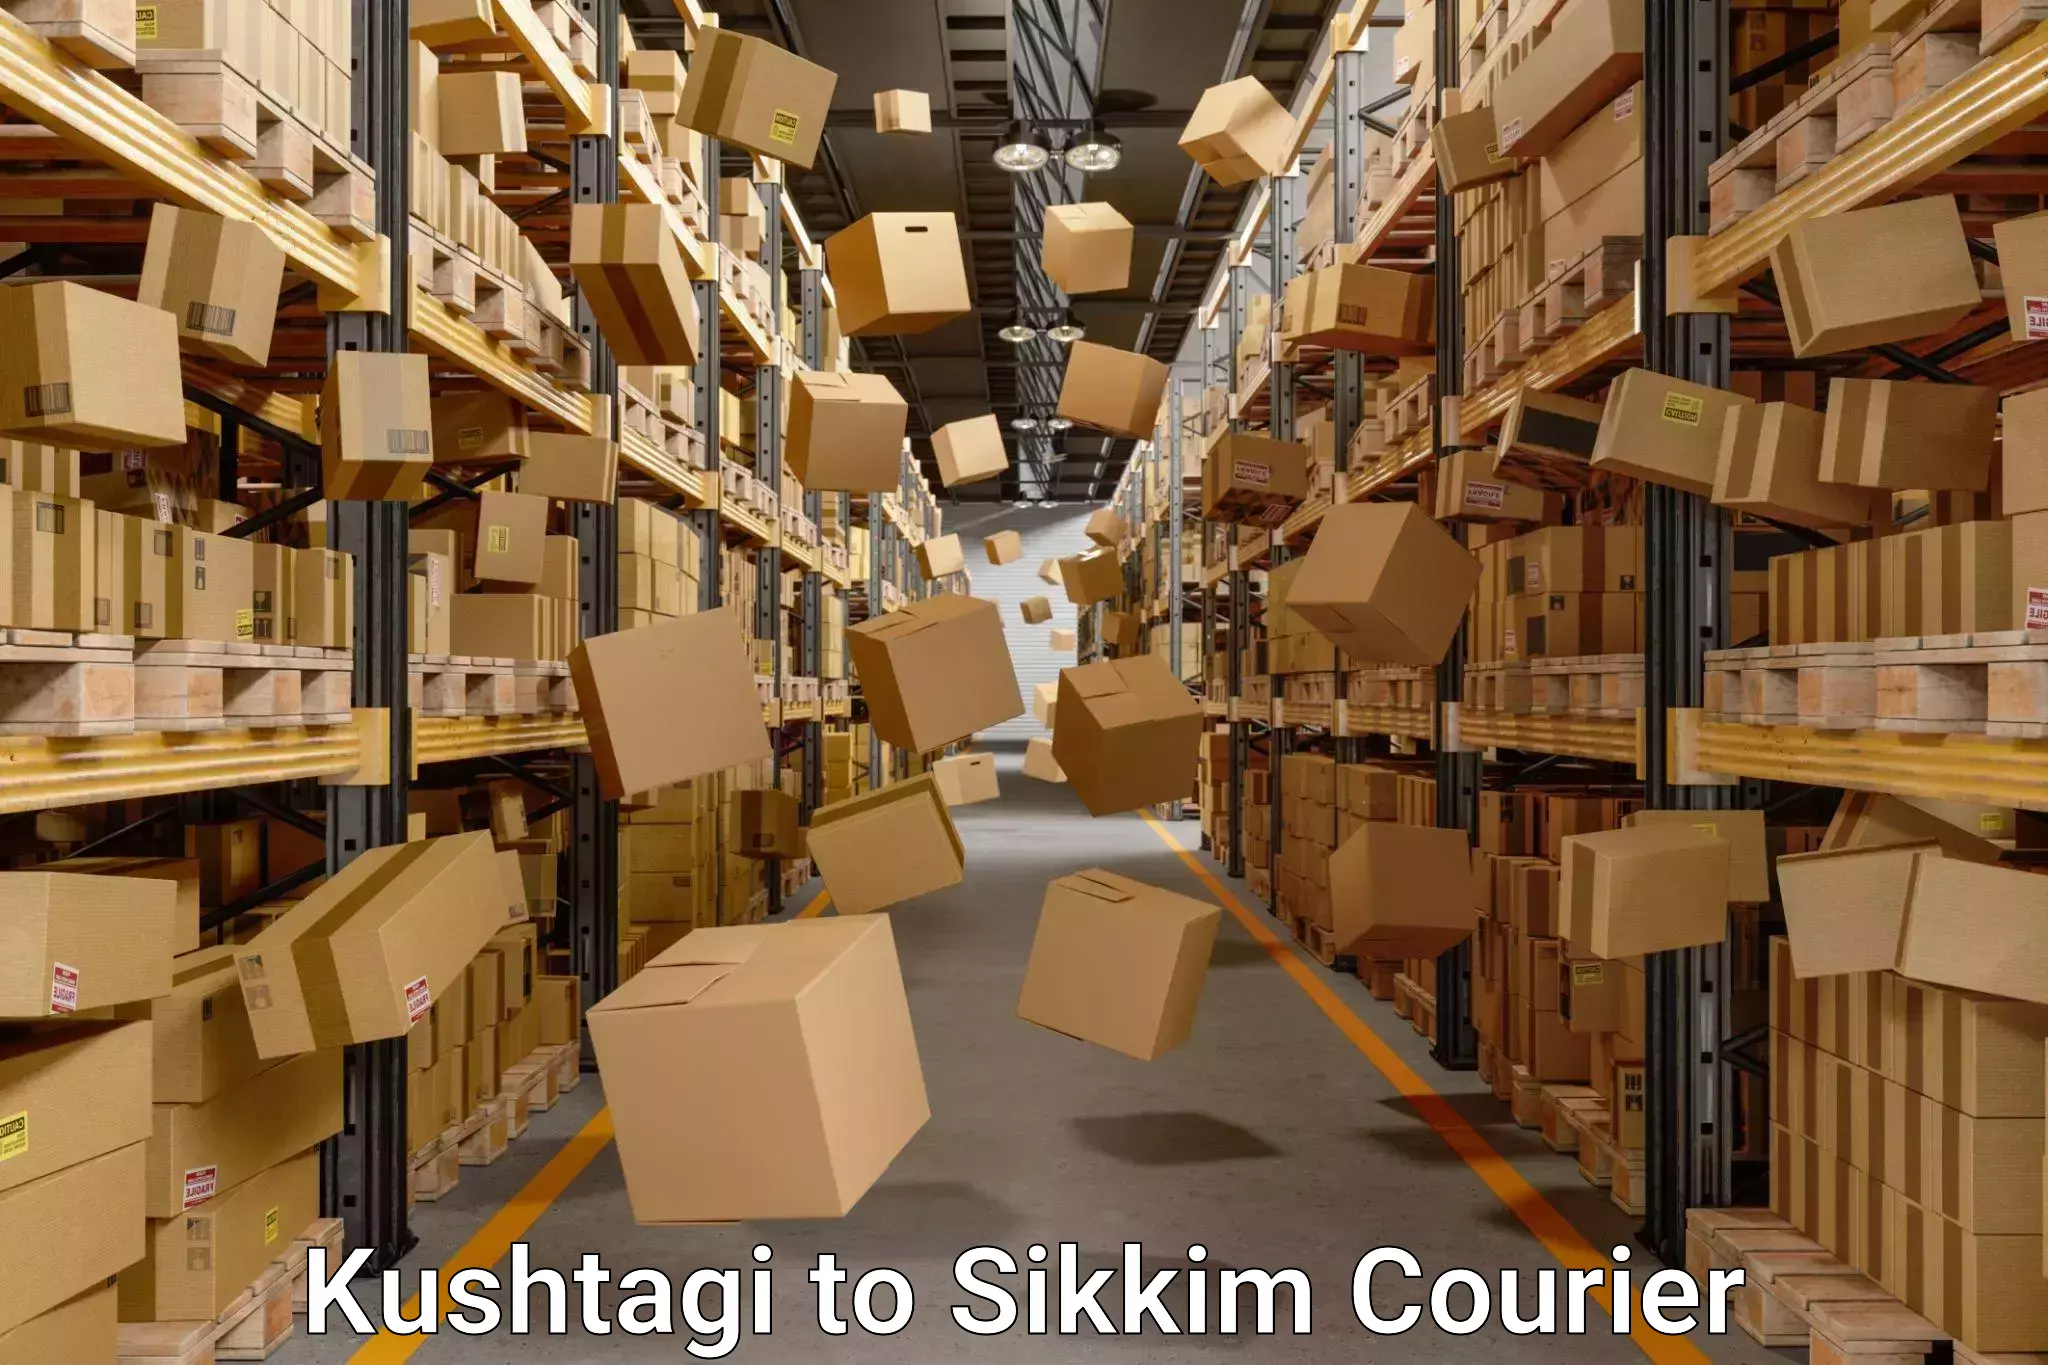 Customized moving experience Kushtagi to Pelling